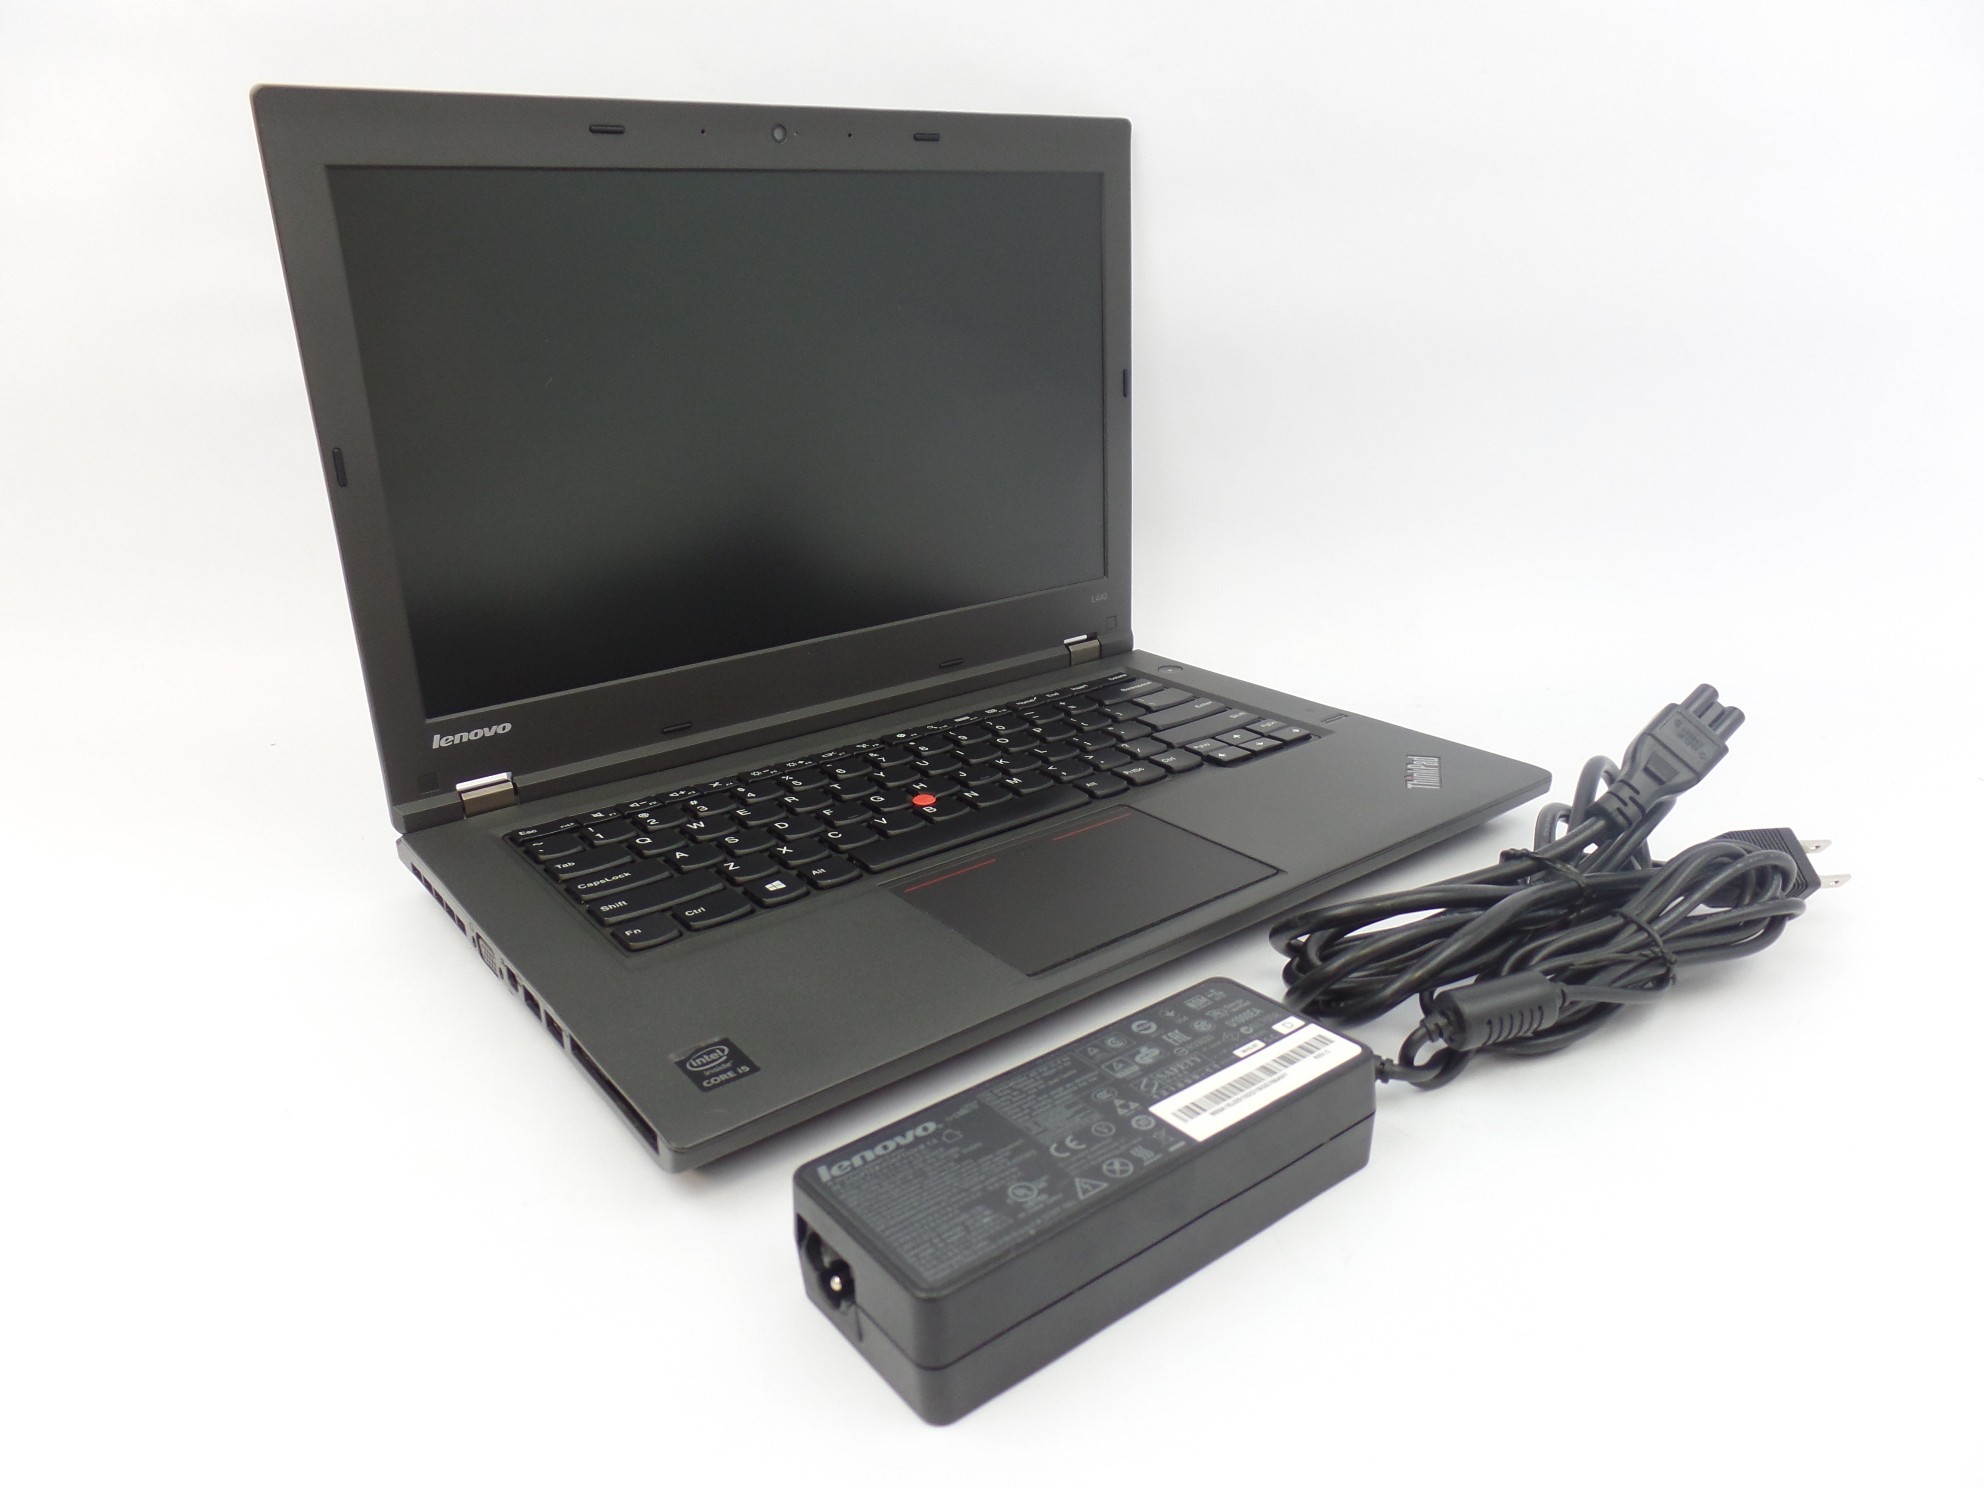 Lenovo ThinkPad L440 14" HD i5-4200M 2.5GHz 4GB 500GB HDD W10P Laptop